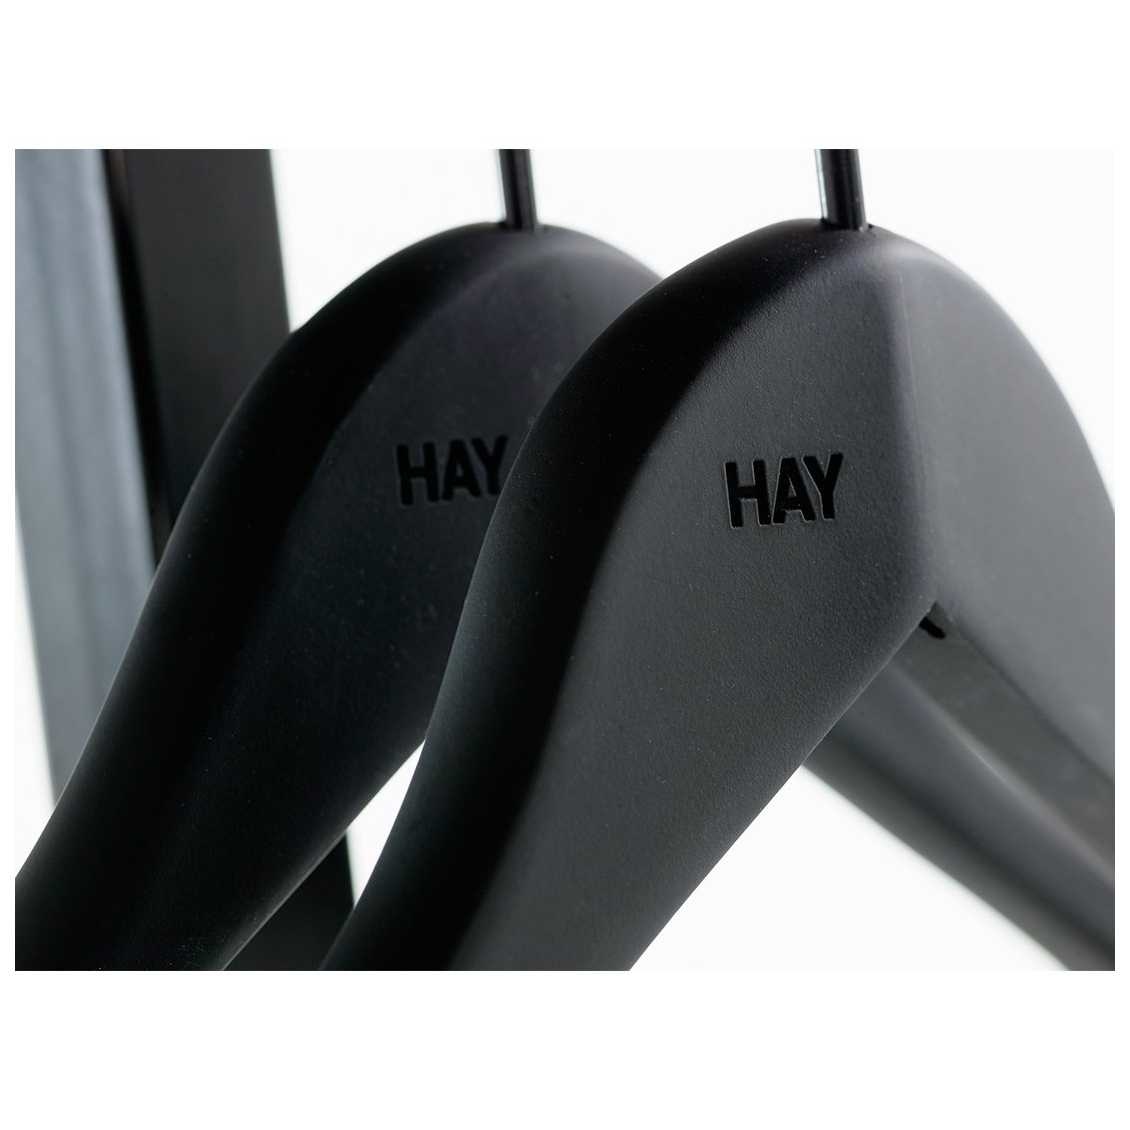 Hay Soft Coat Hanger Set of 4